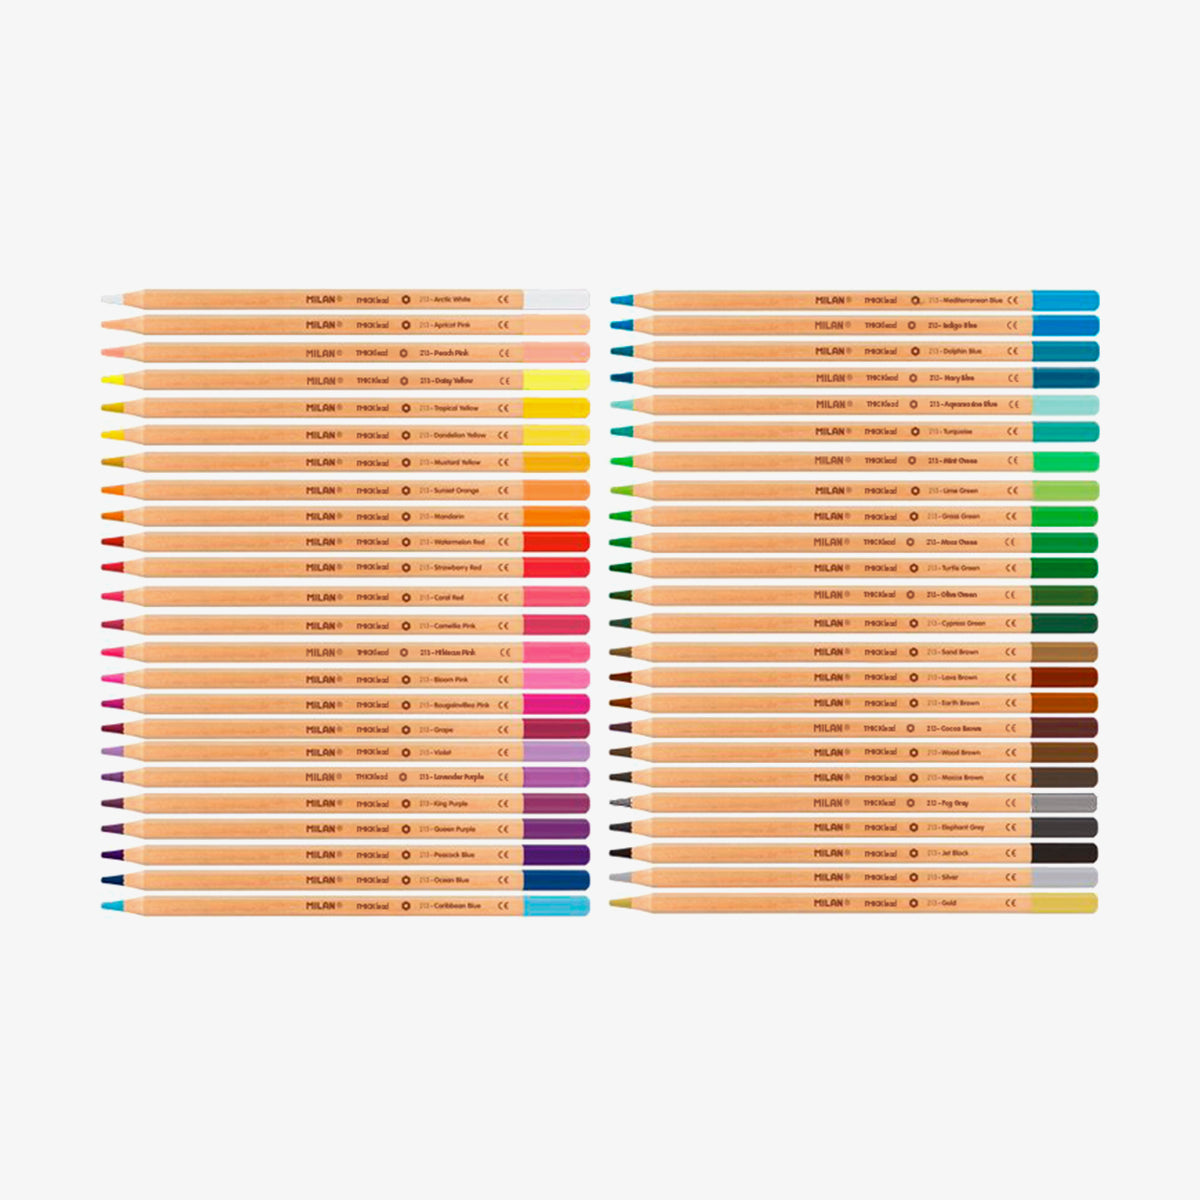 48 llapis de colors de mina gruixuda (3,5 mm) en capsa metàl·lica